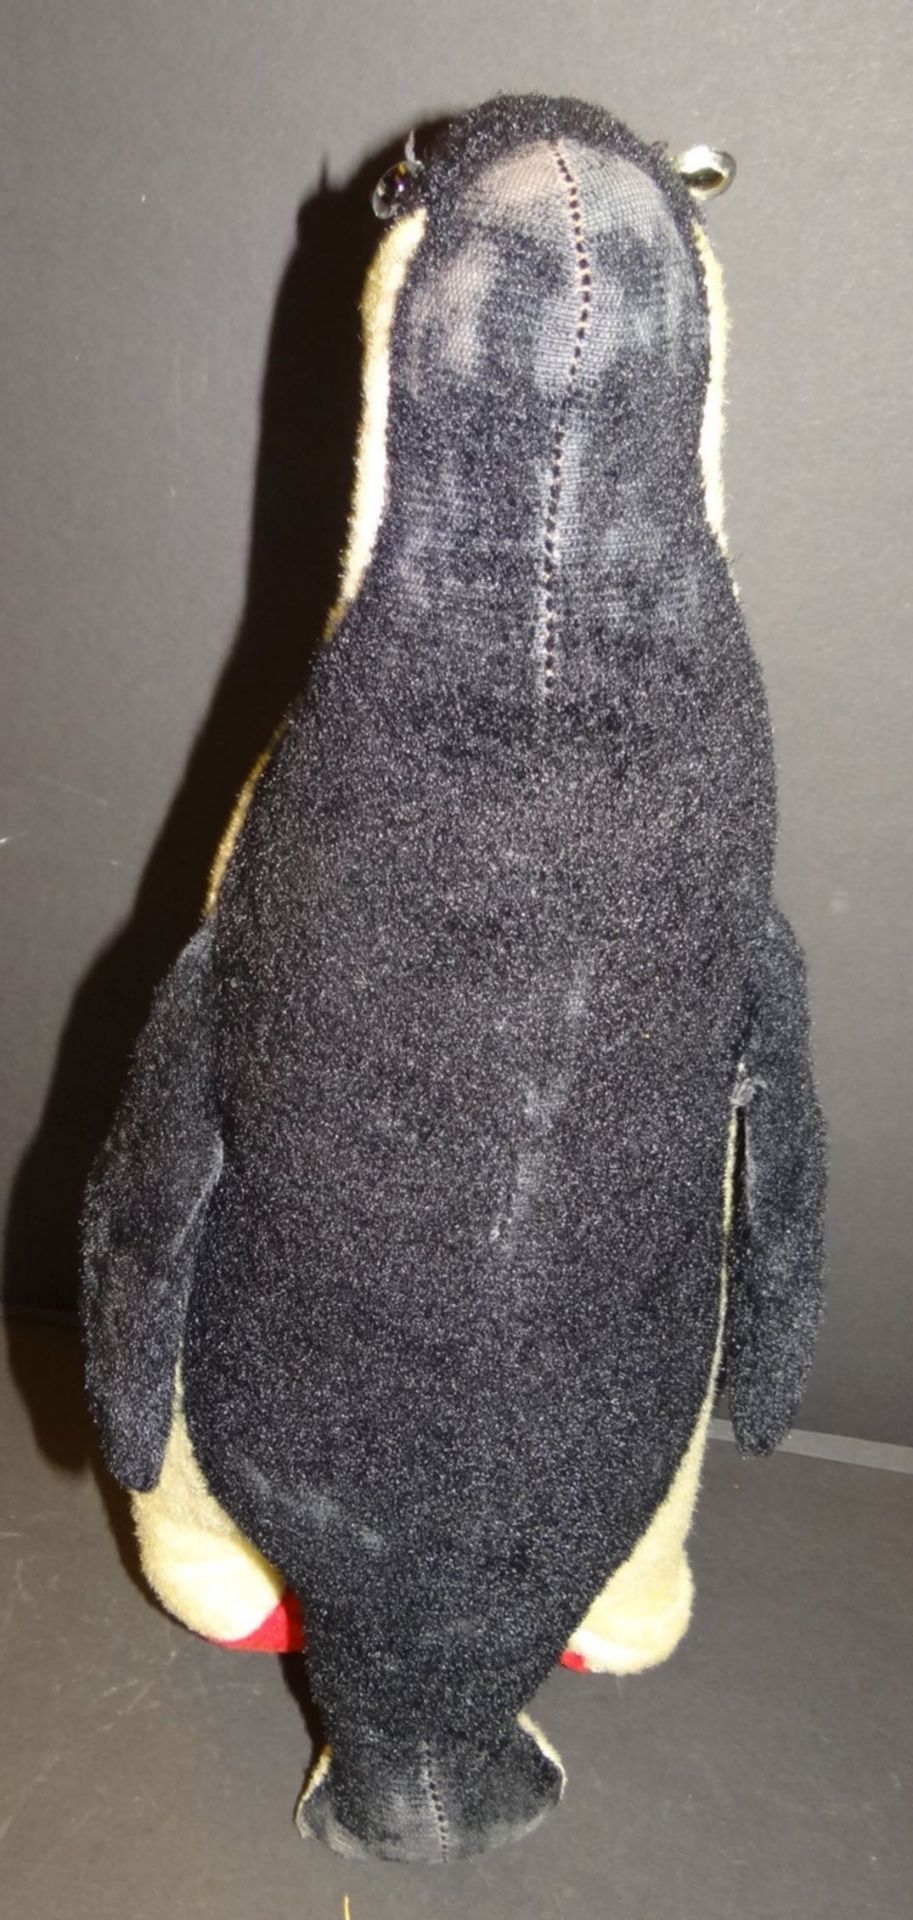 gr. alter Pinguin, hart gestopft, wohl Hermann, bespielt, ca. 40 cm - Bild 3 aus 4